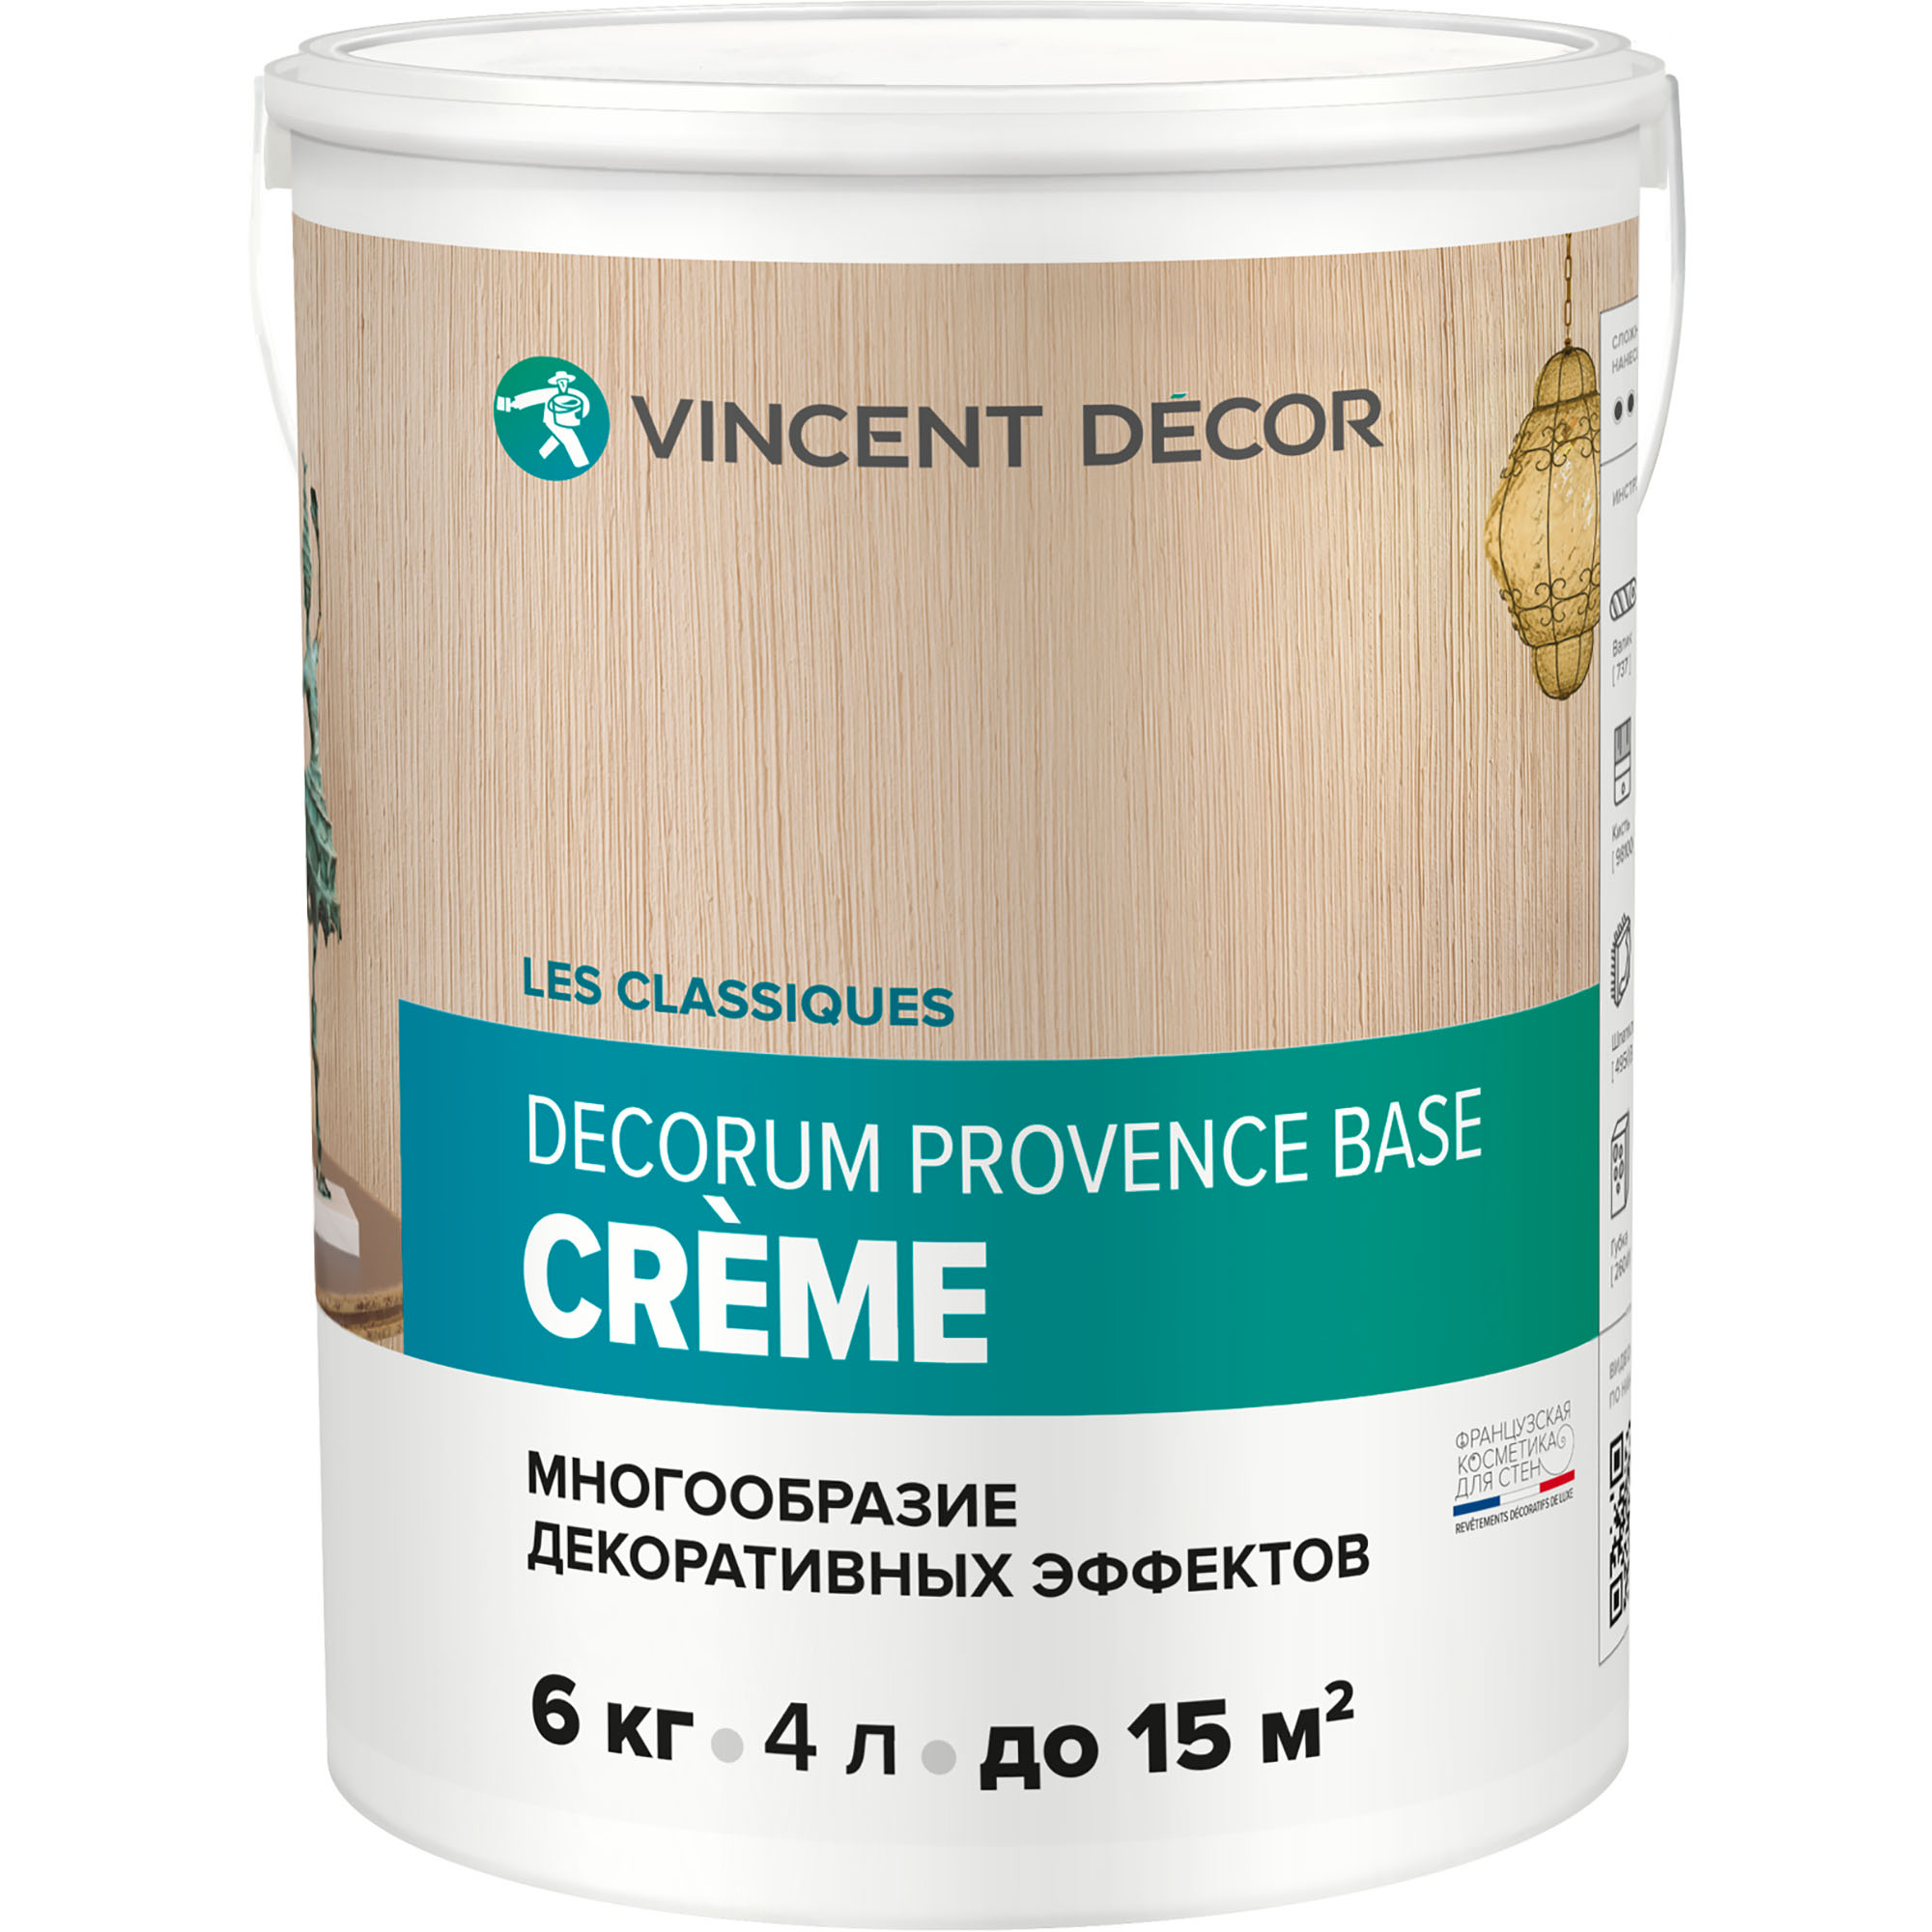 Декоративное покрытие Vincent Decor Decorum Provence Crema многообразные декоративные эффекты 6 кг пазл 3d кристаллический